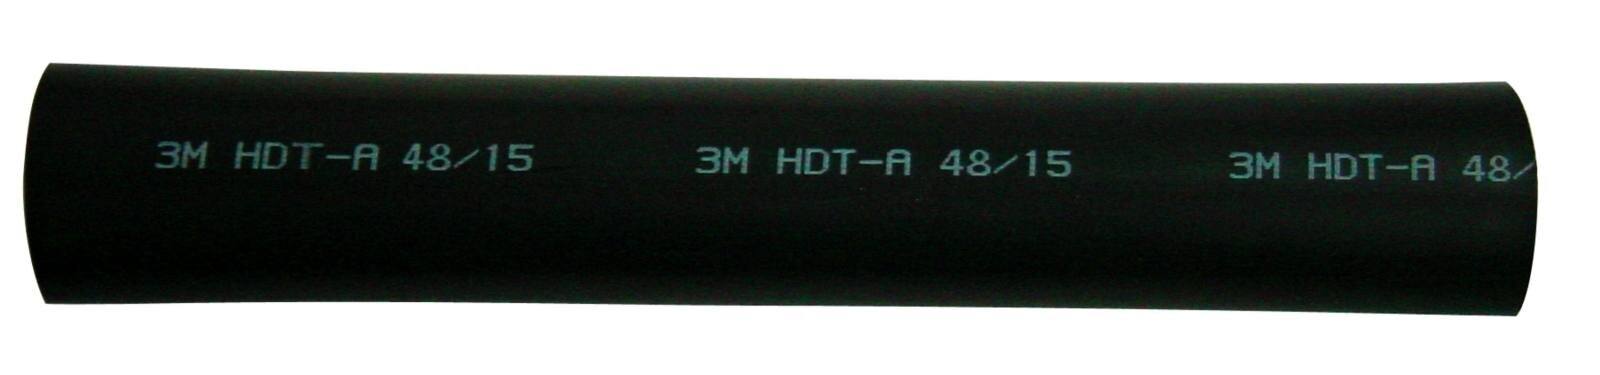  3M HDT-A Paksuseinäinen lämpökutisteputki liimalla, musta, 30/8 mm, 1 m